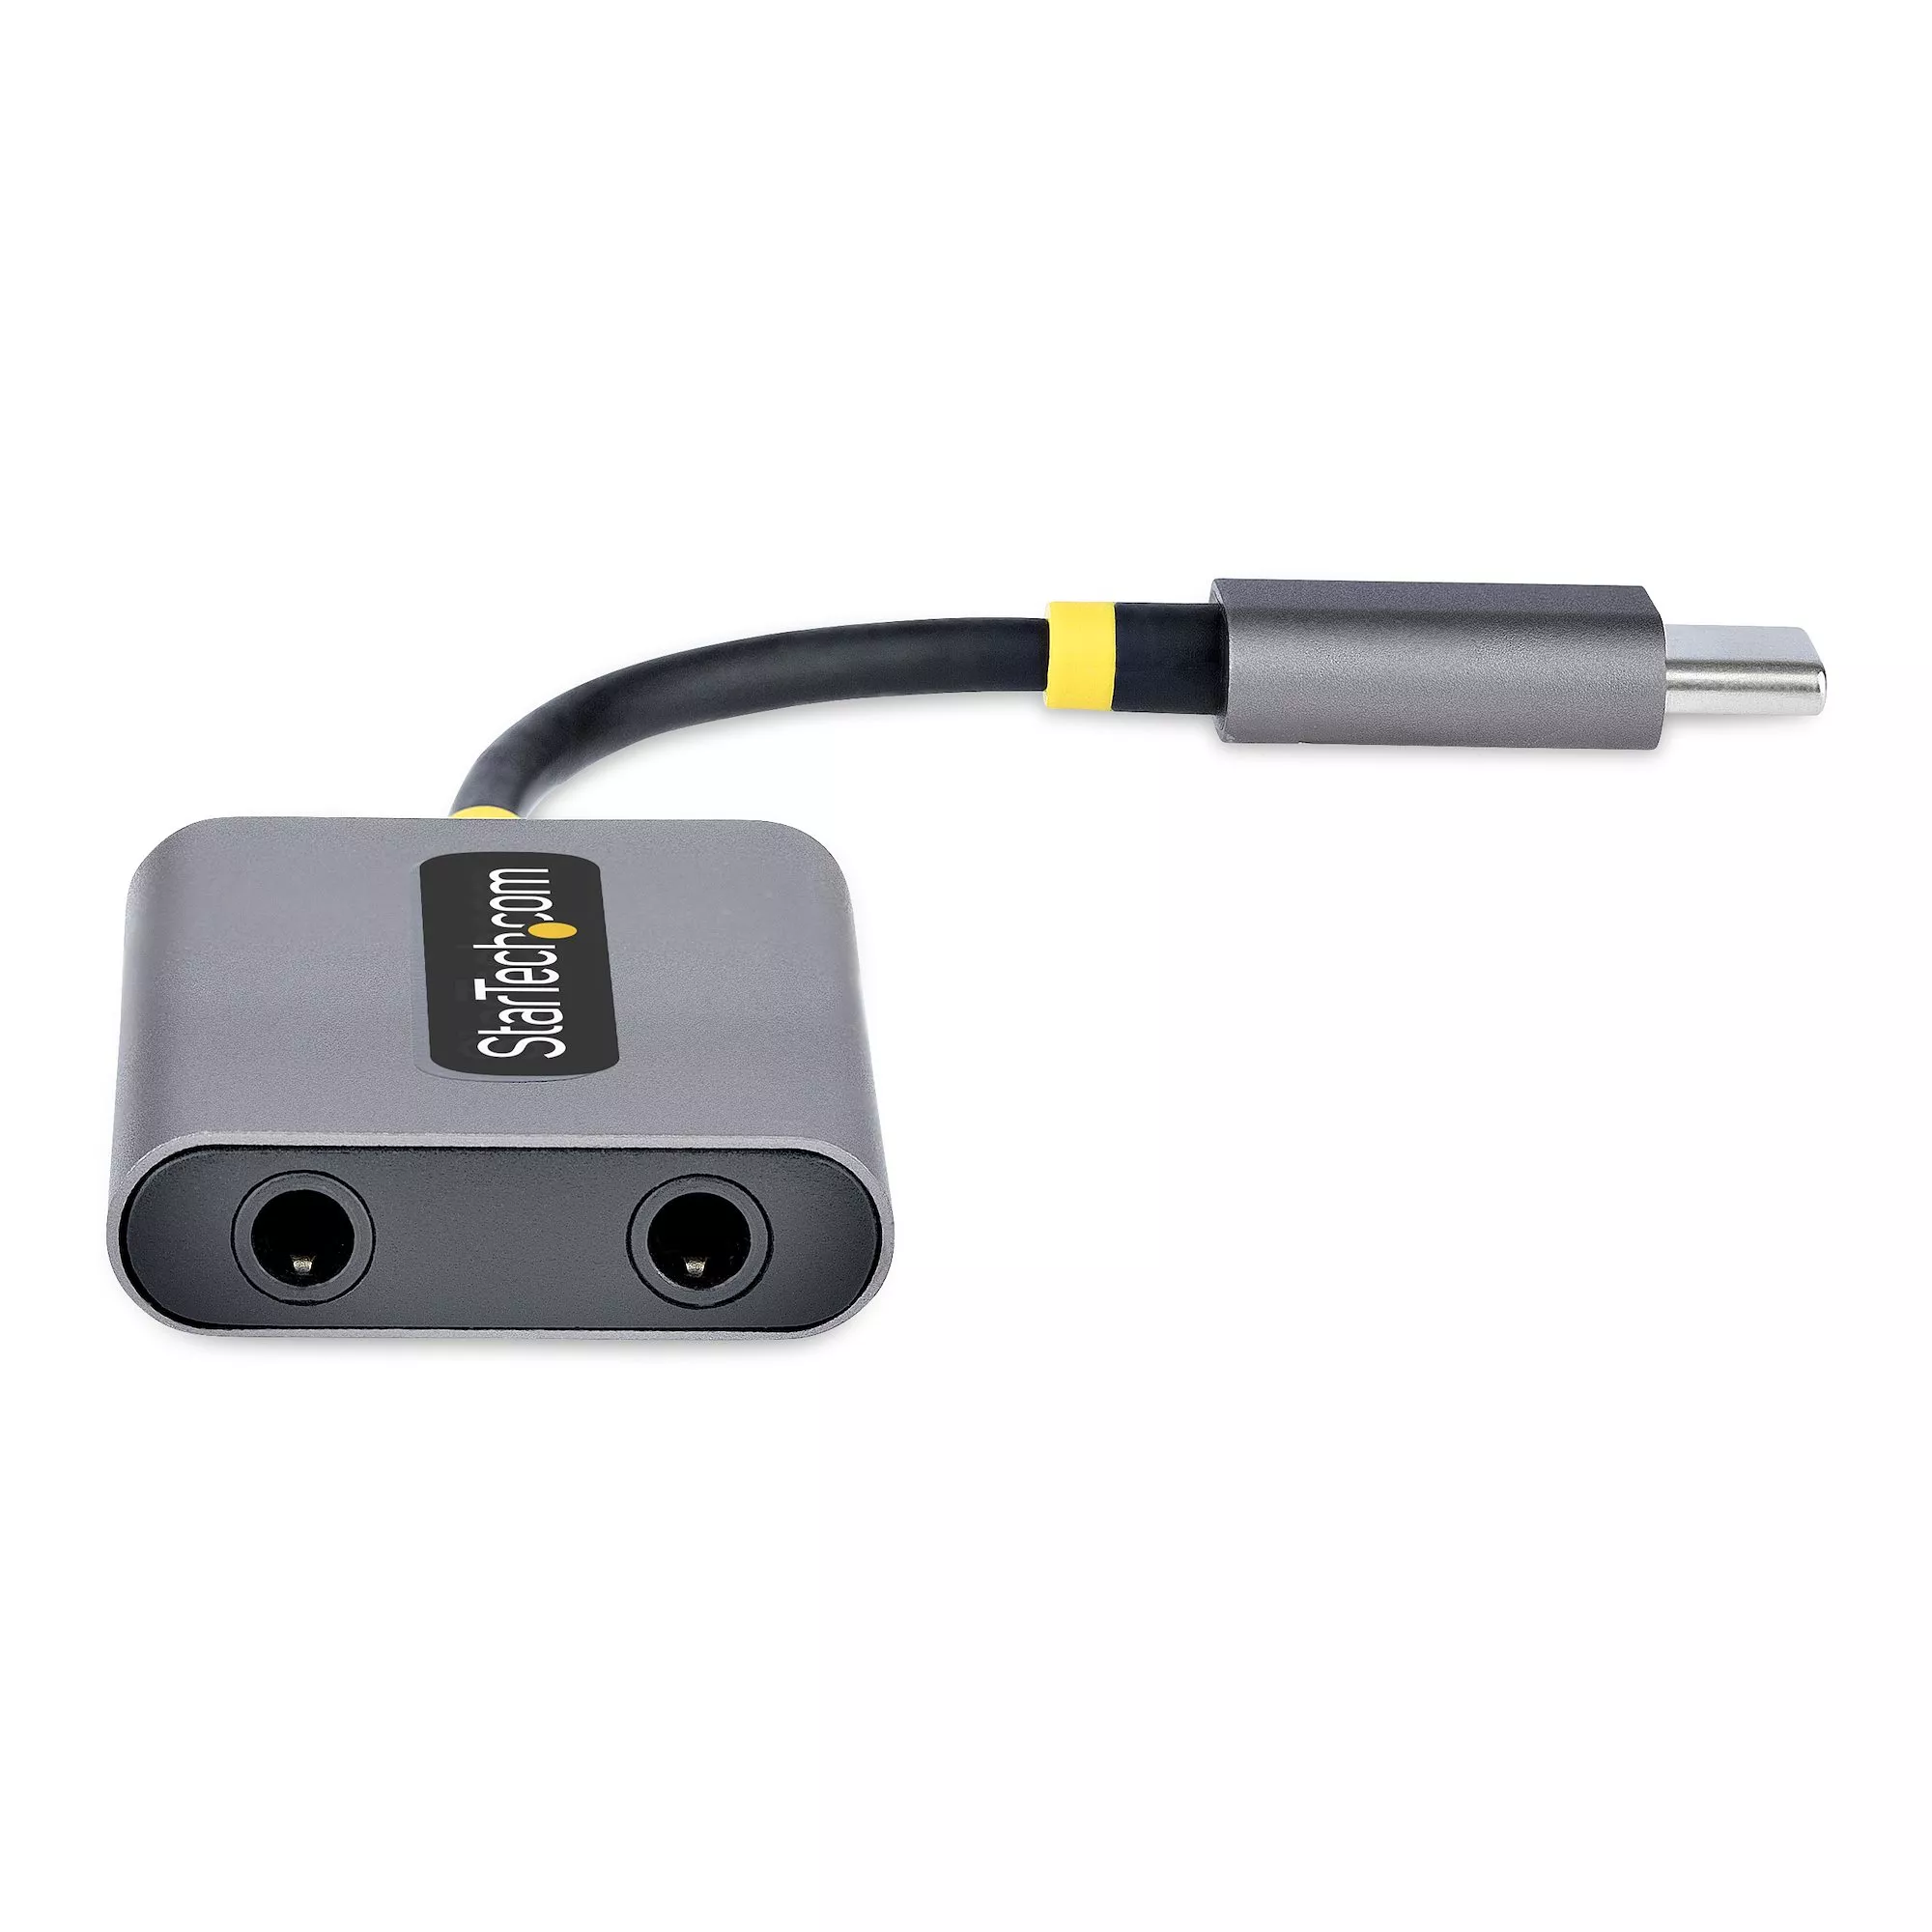 Adaptateur Audio USB-C vers Double Jack 3.5mm Femelle (Casque +